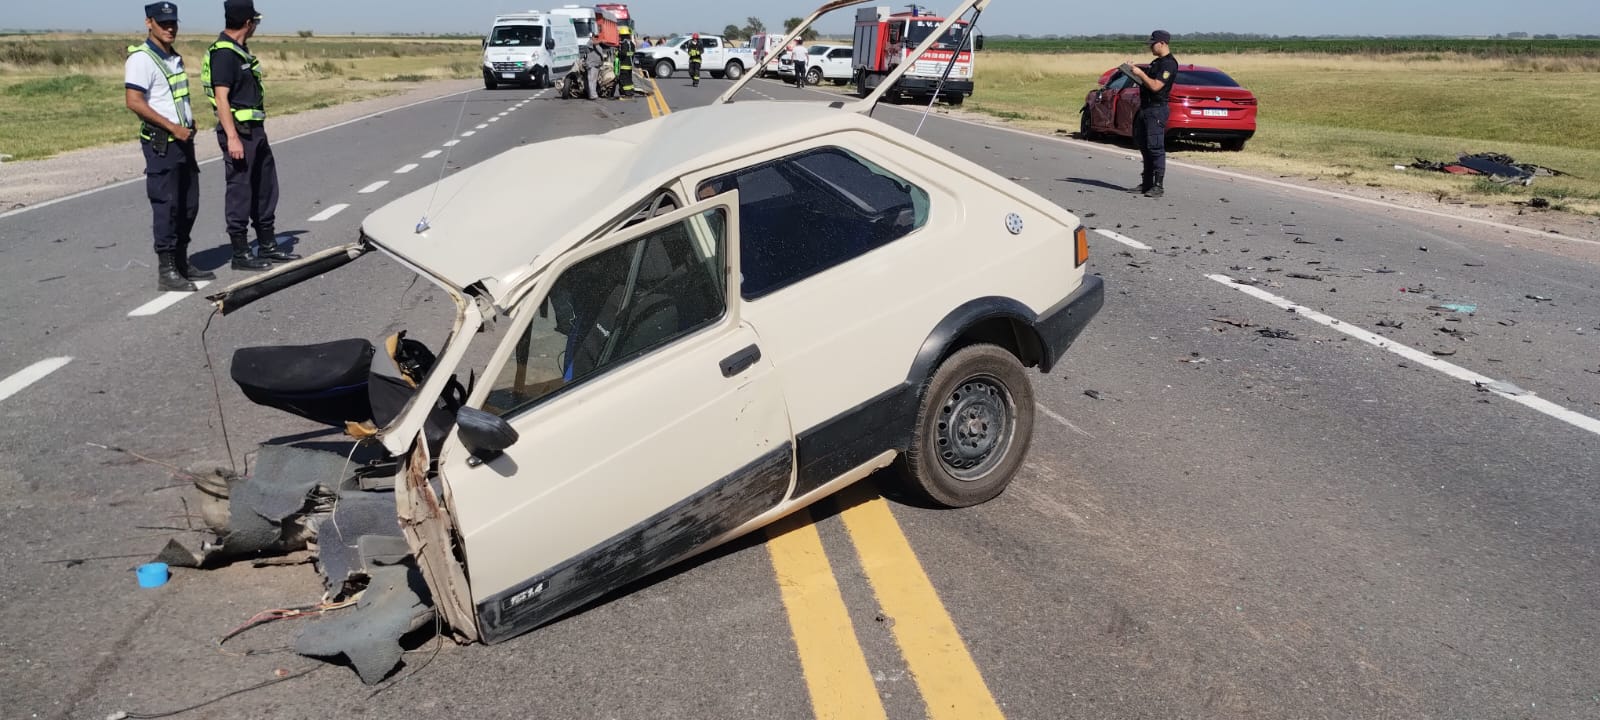 Impactante accidente en el acceso a Uriburu: tres heridos graves tras colisión entre BMW y Fiat Spazio